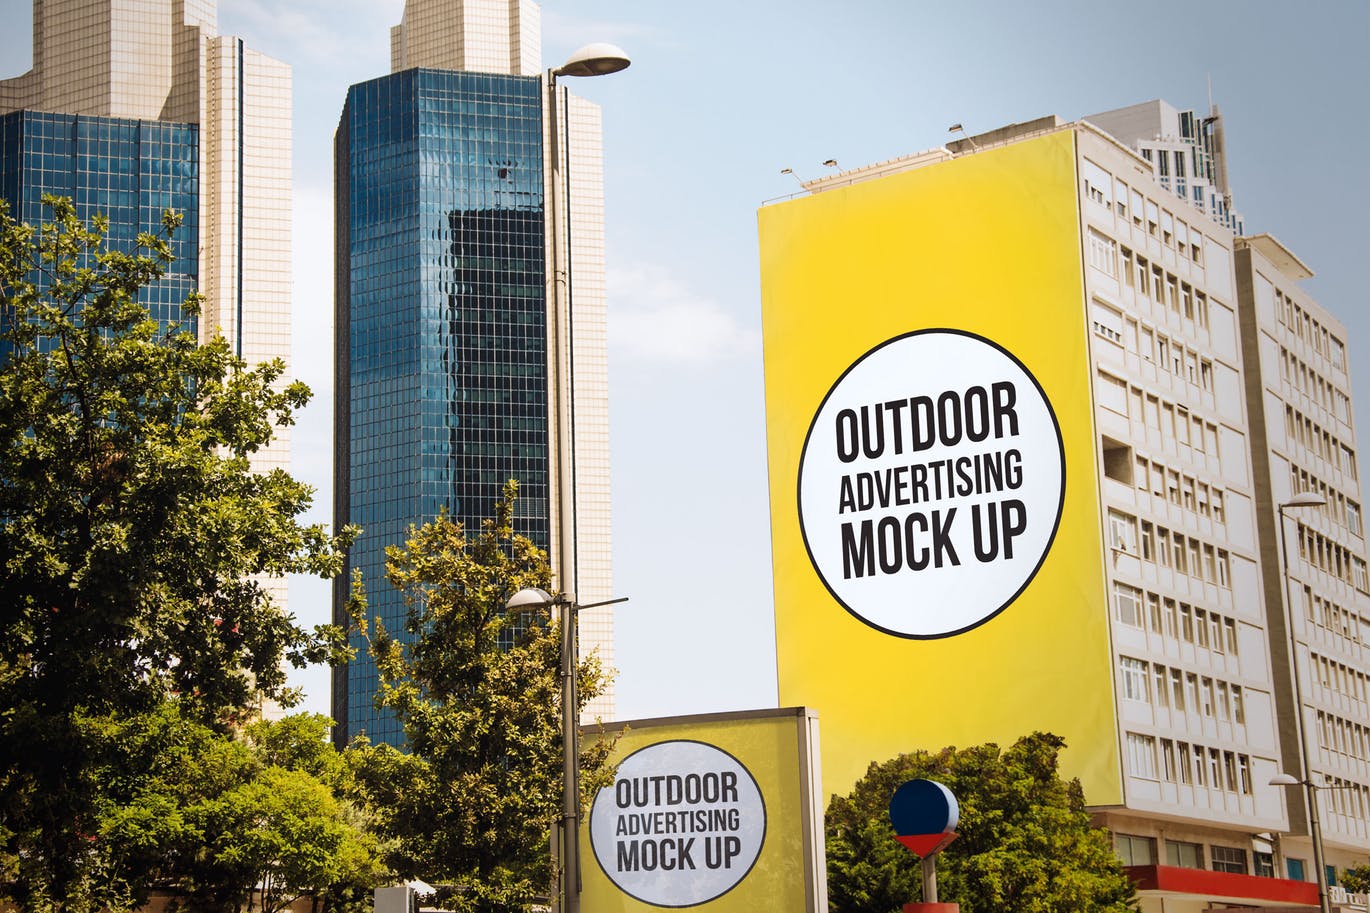 大型户外楼体广告牌广告设计效果图样机模板#3 Outdoor Wall Advertising Mockup Template #3插图